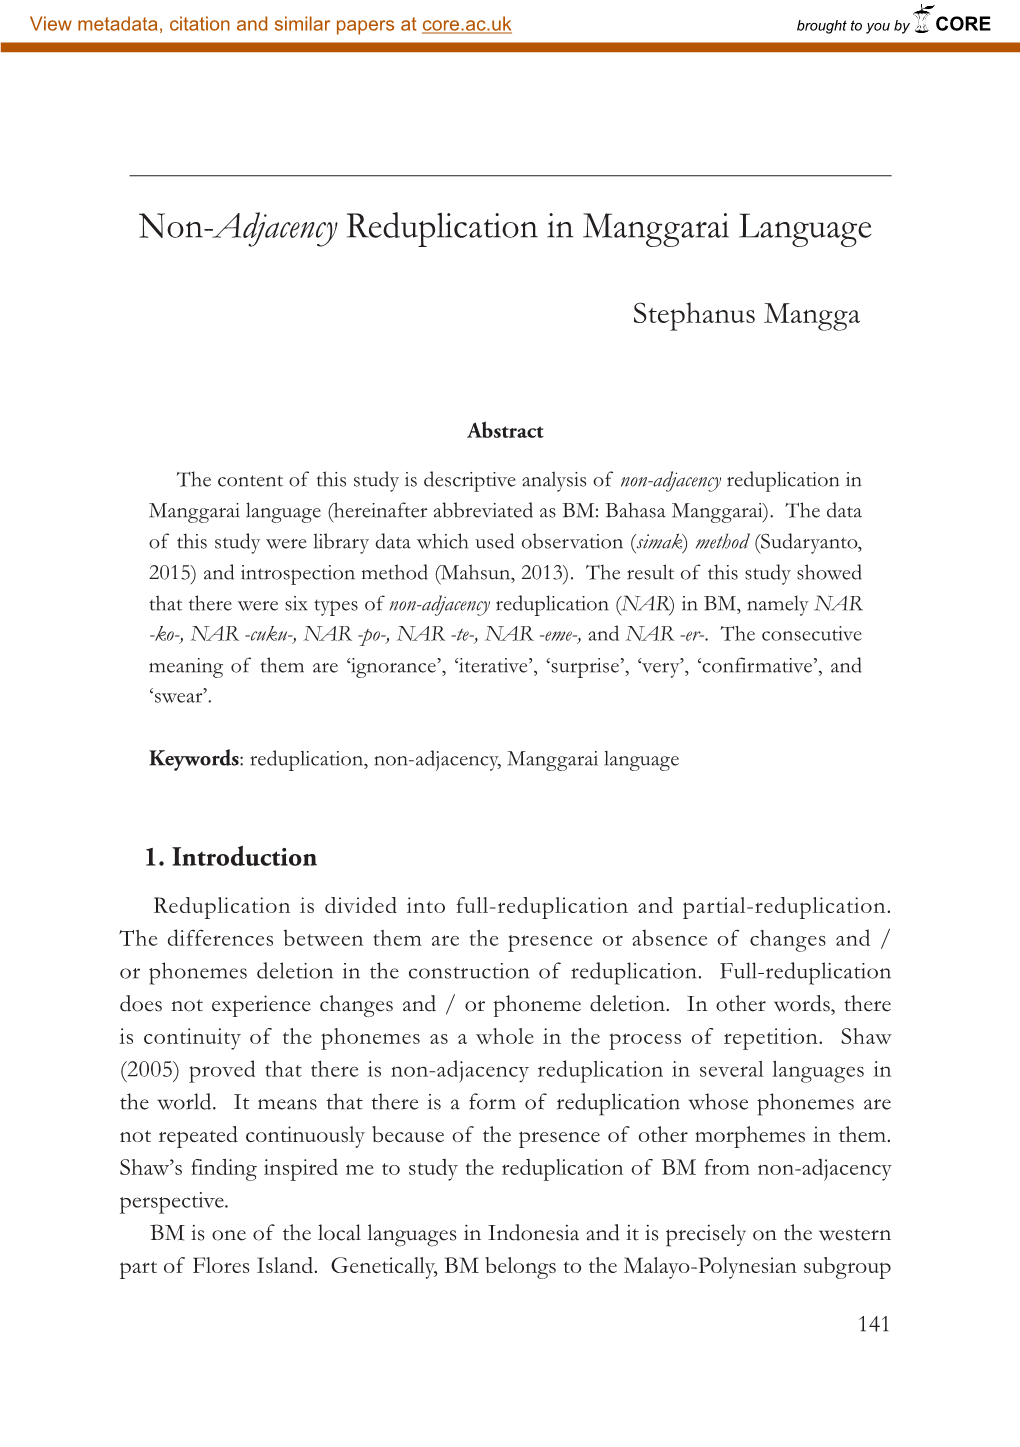 Non-Adjacency Reduplication in Manggarai Language